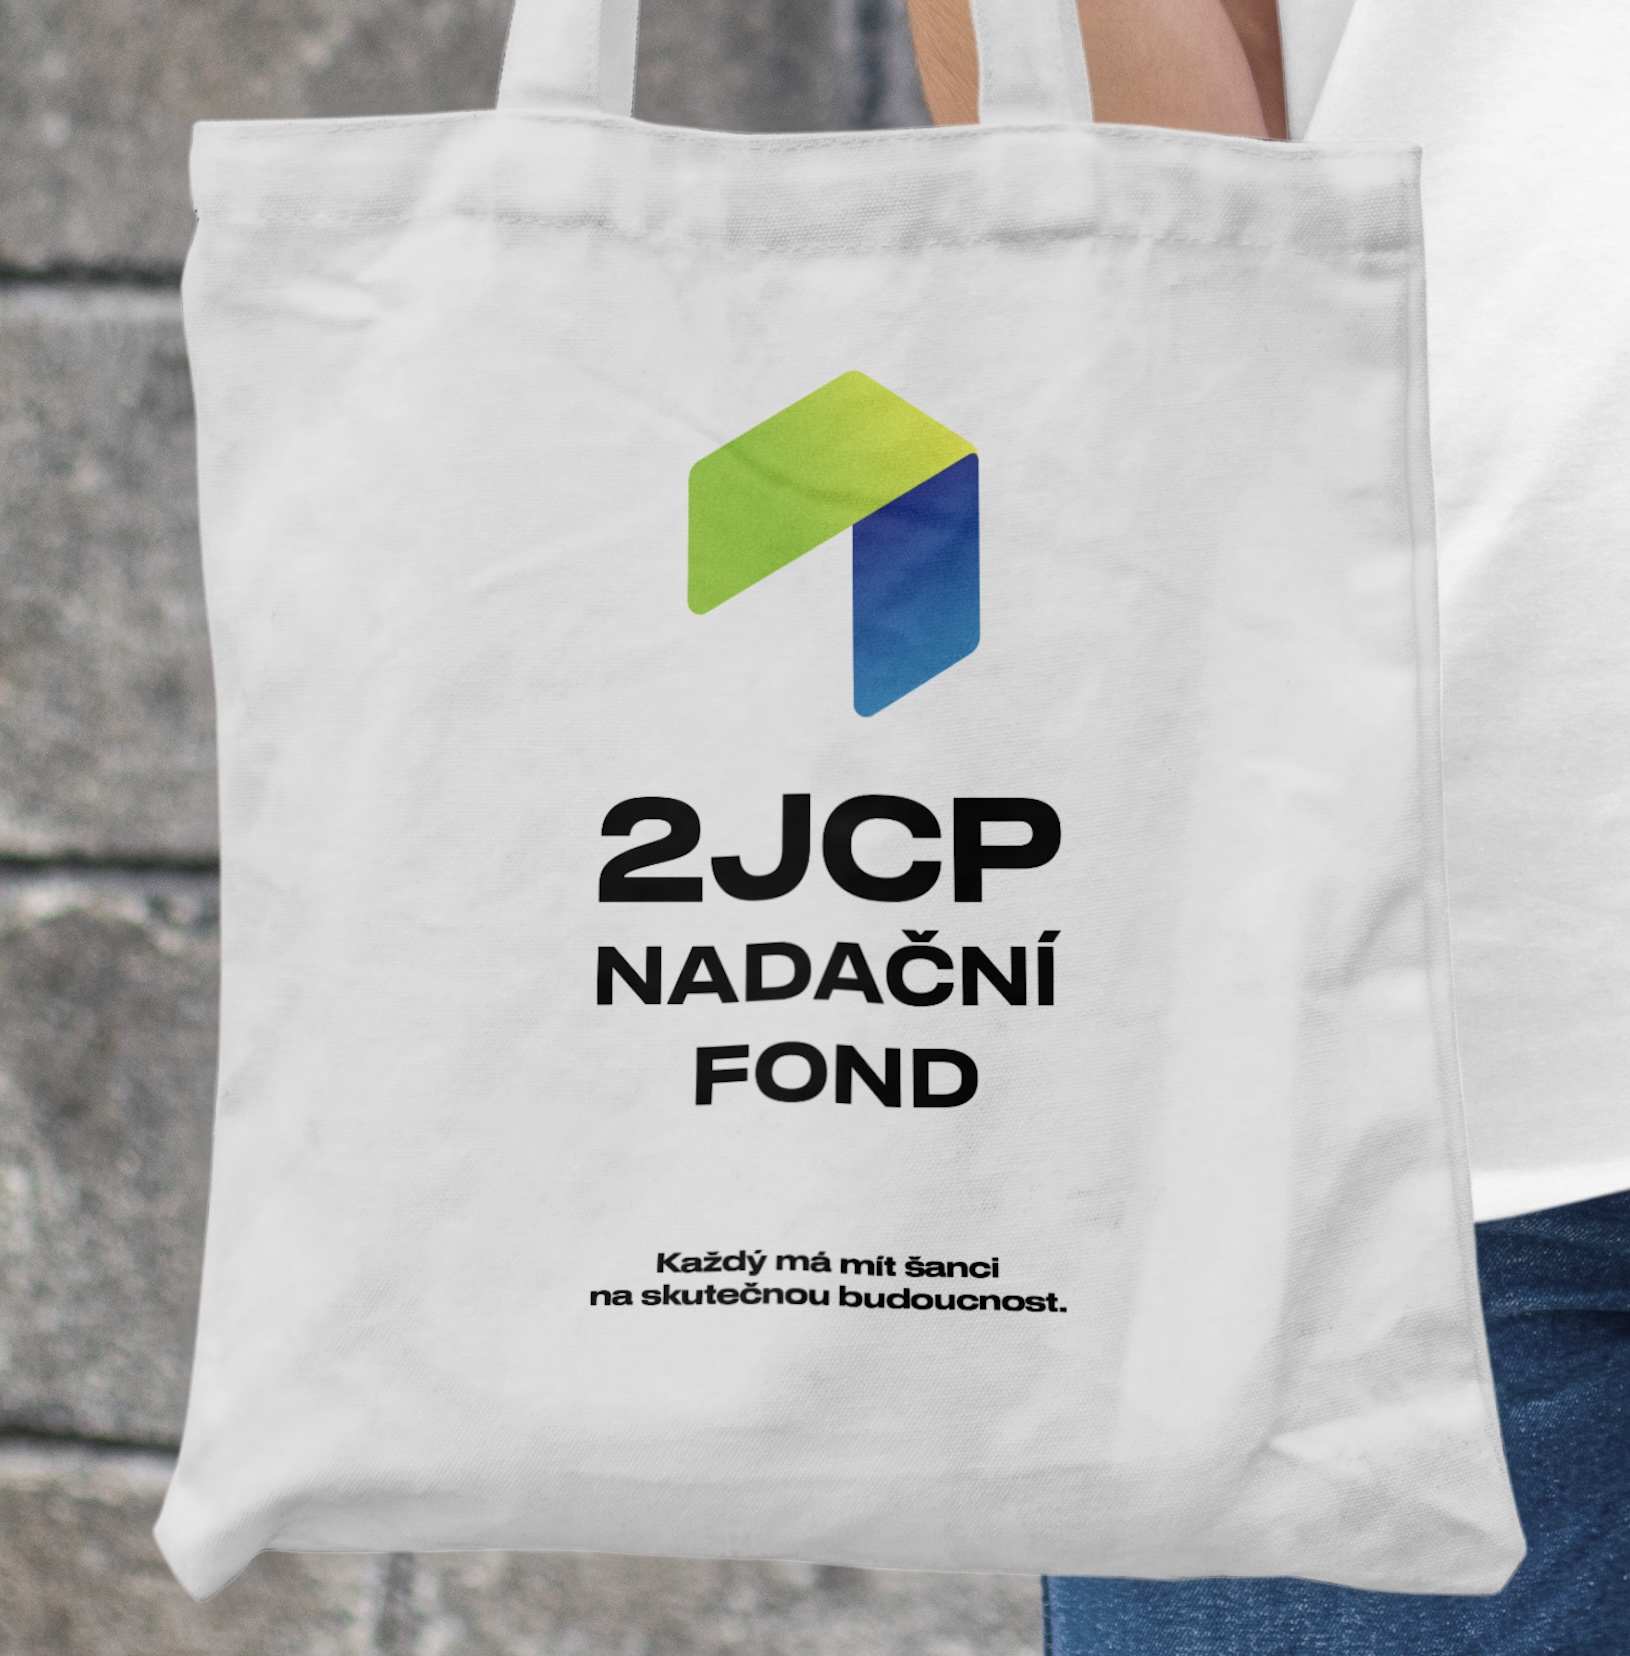 Obrázek projektu Nadační fond 2JCP - změna zaměření a nové logo